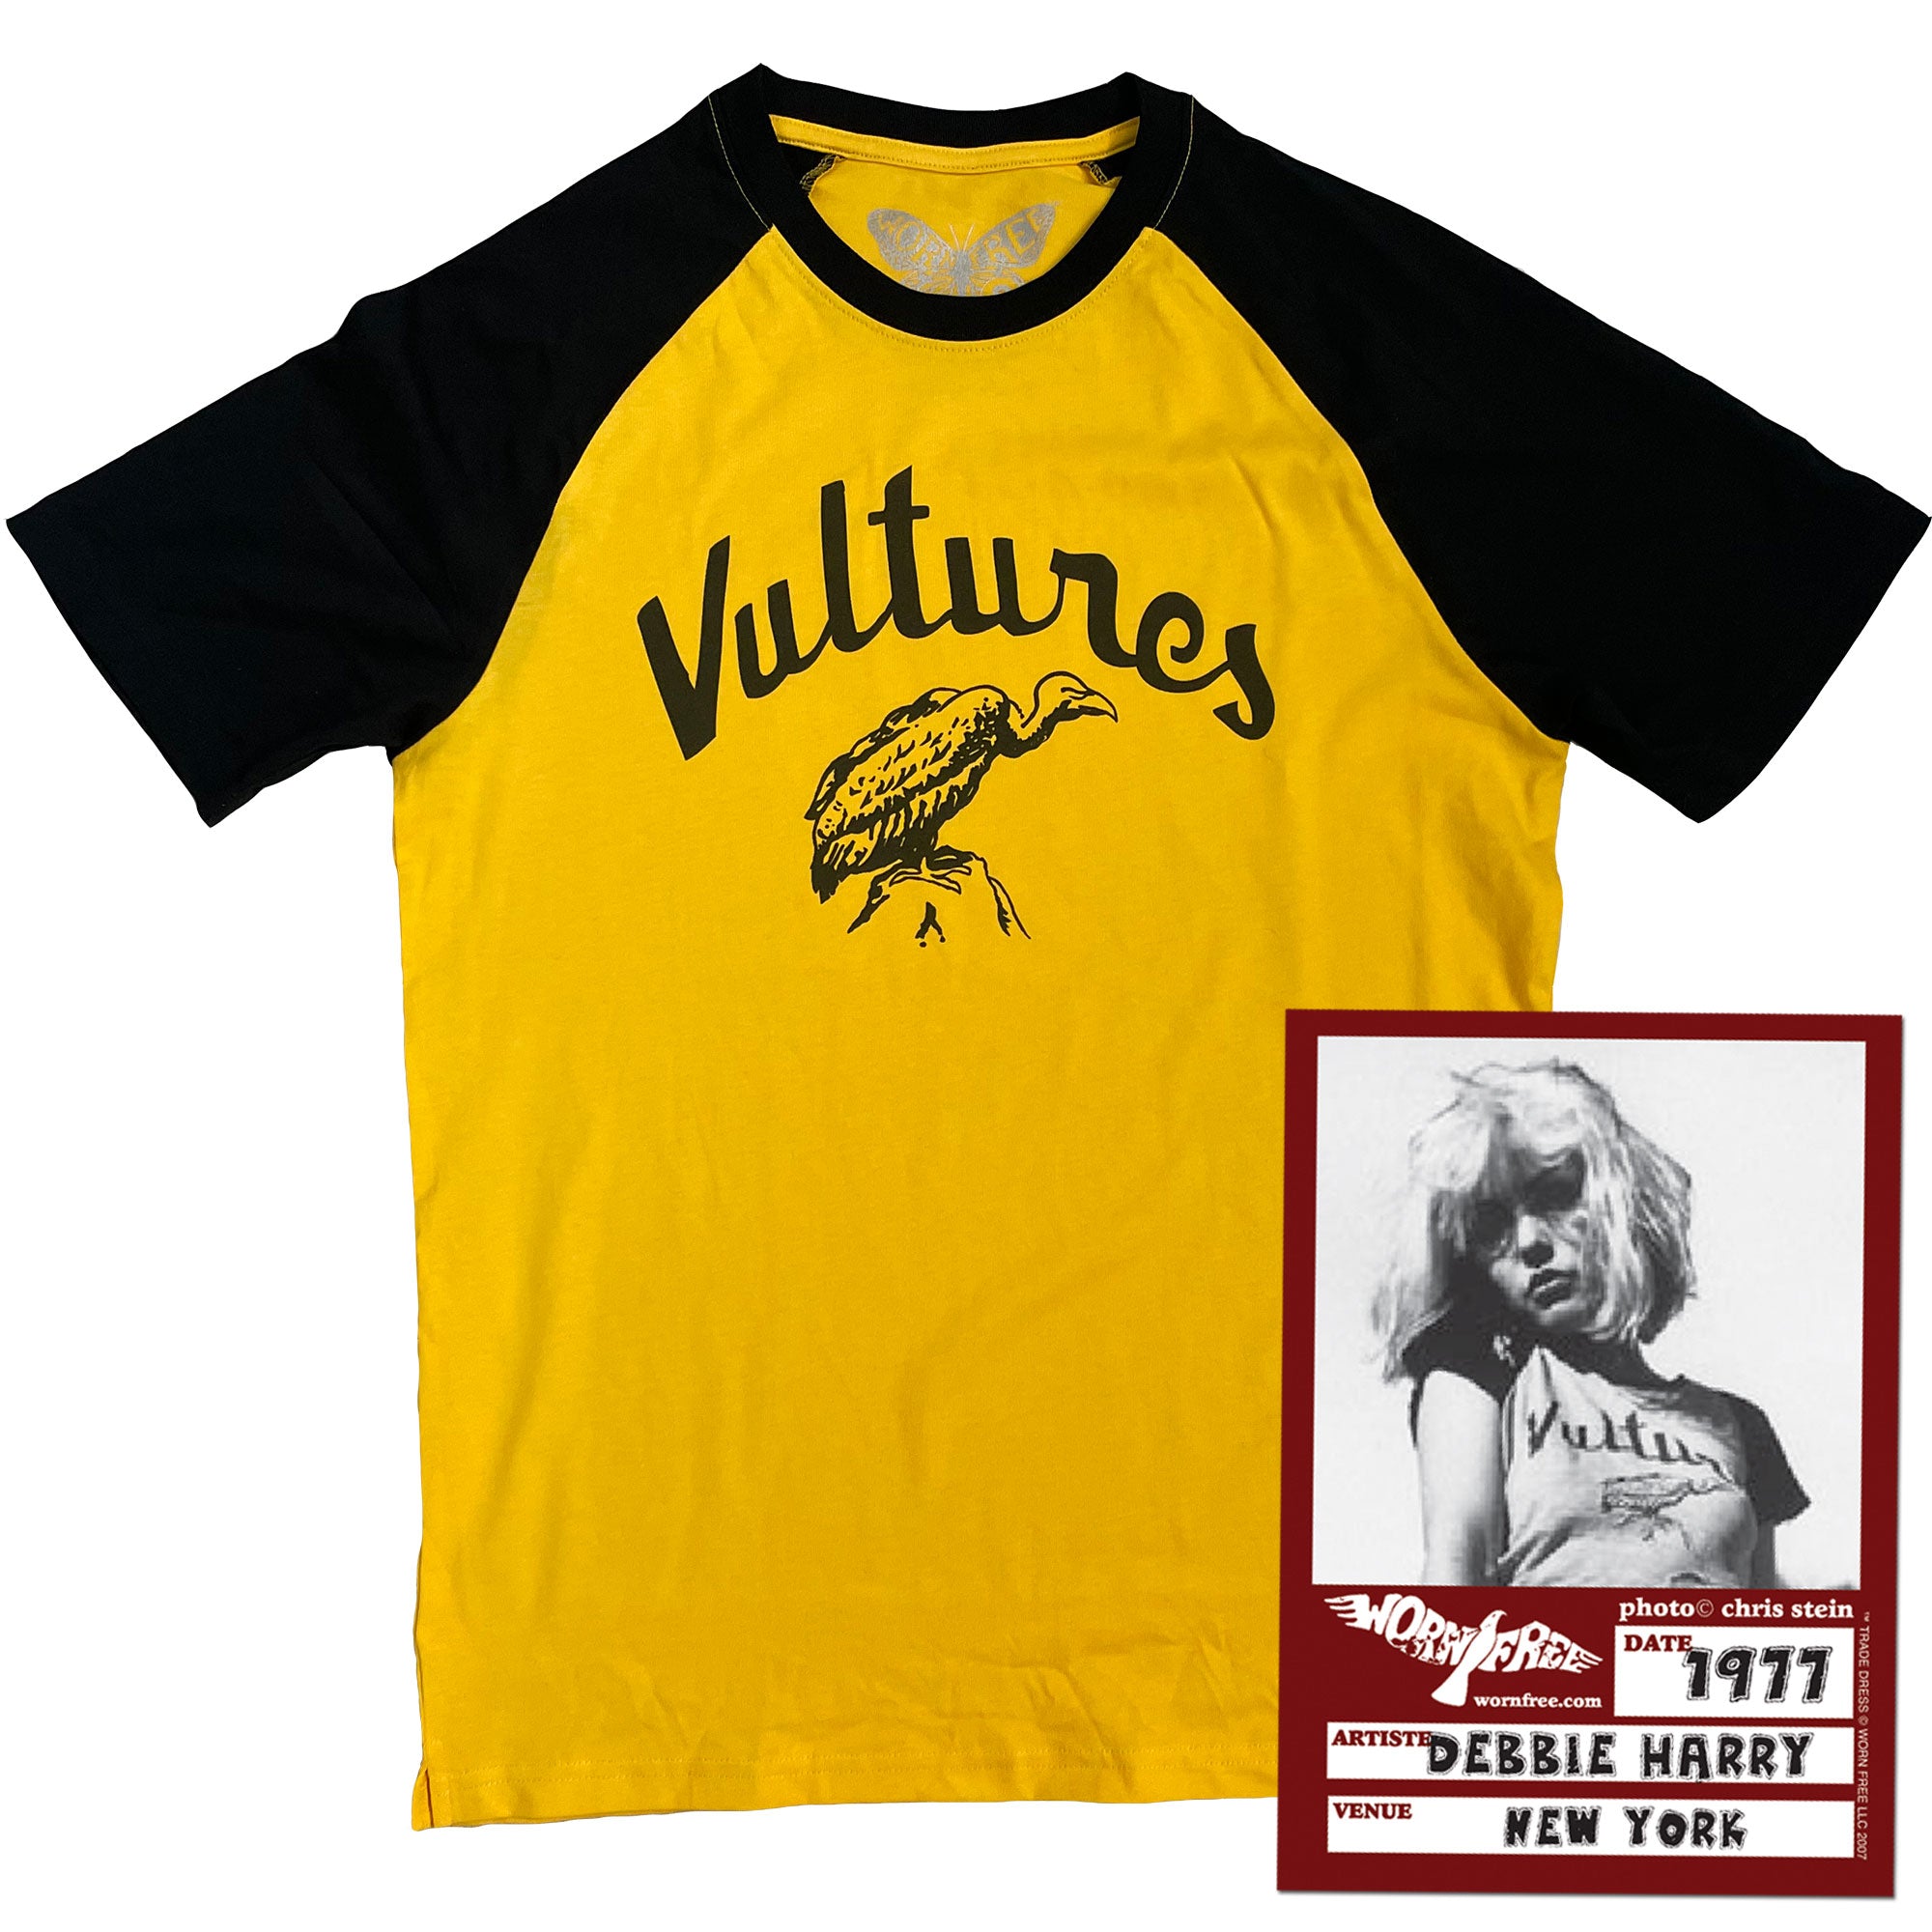 Blondie T-Shirt - Vultures Baseball Tee worn by Debbie Harry